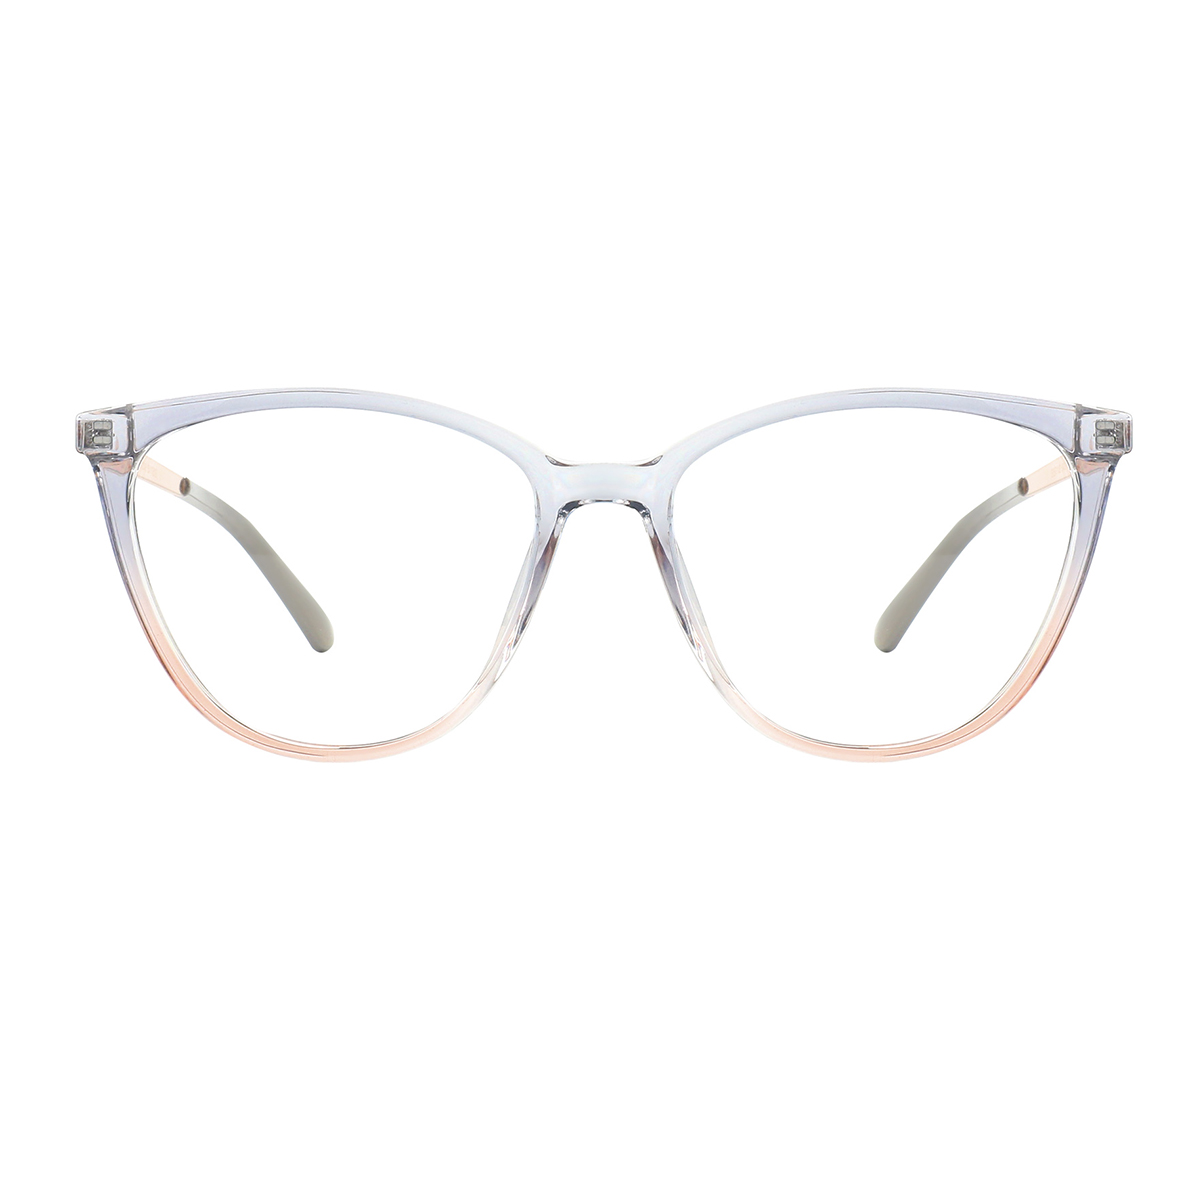 cat-eye eyeglasses #1005 - gray